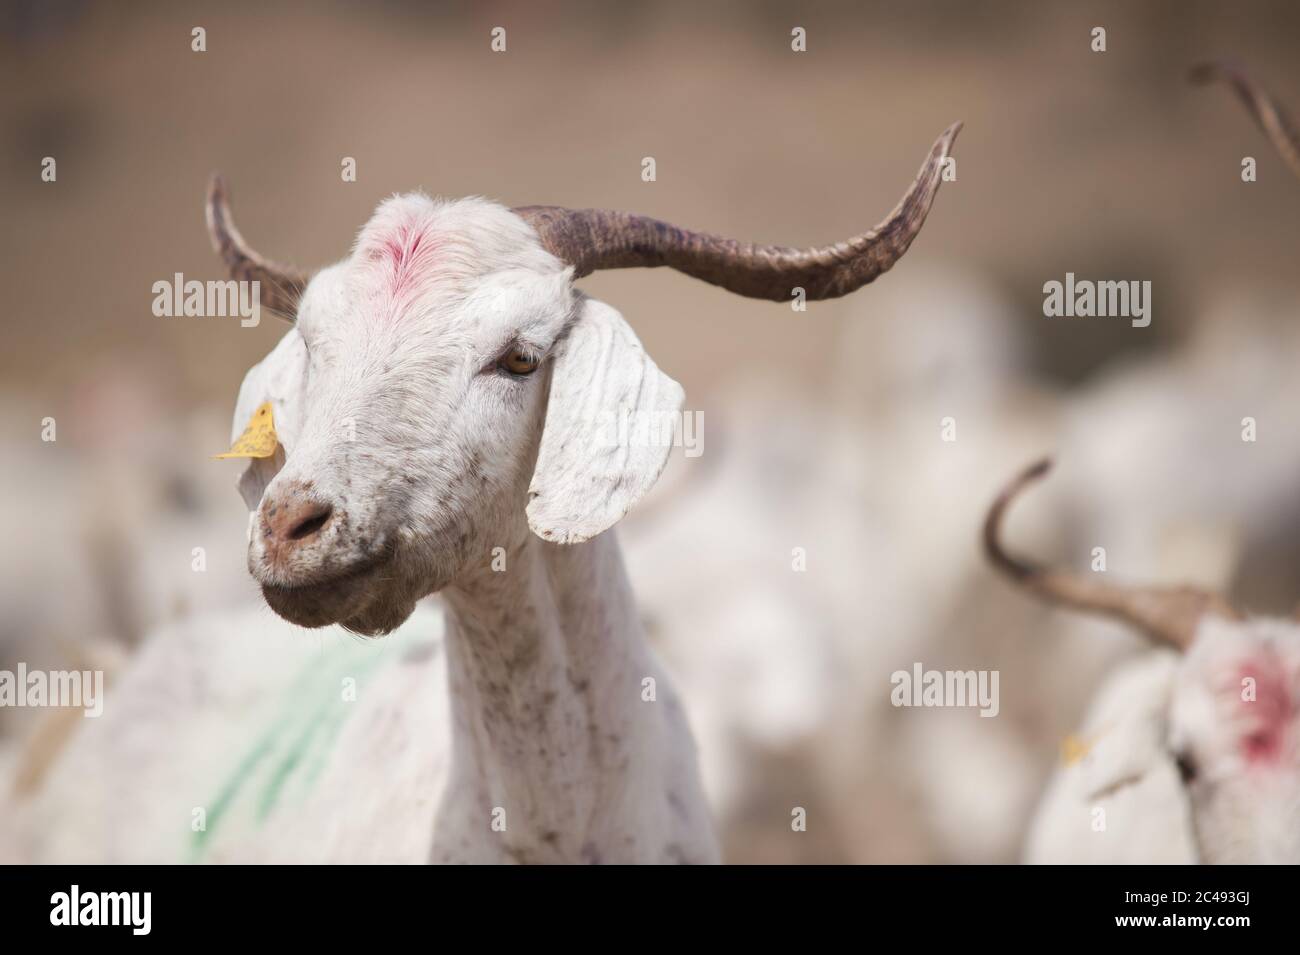 Capra bianca in una fattoria sotto la luce del sole con un sfondo sfocato - concetto di bestiame Foto Stock